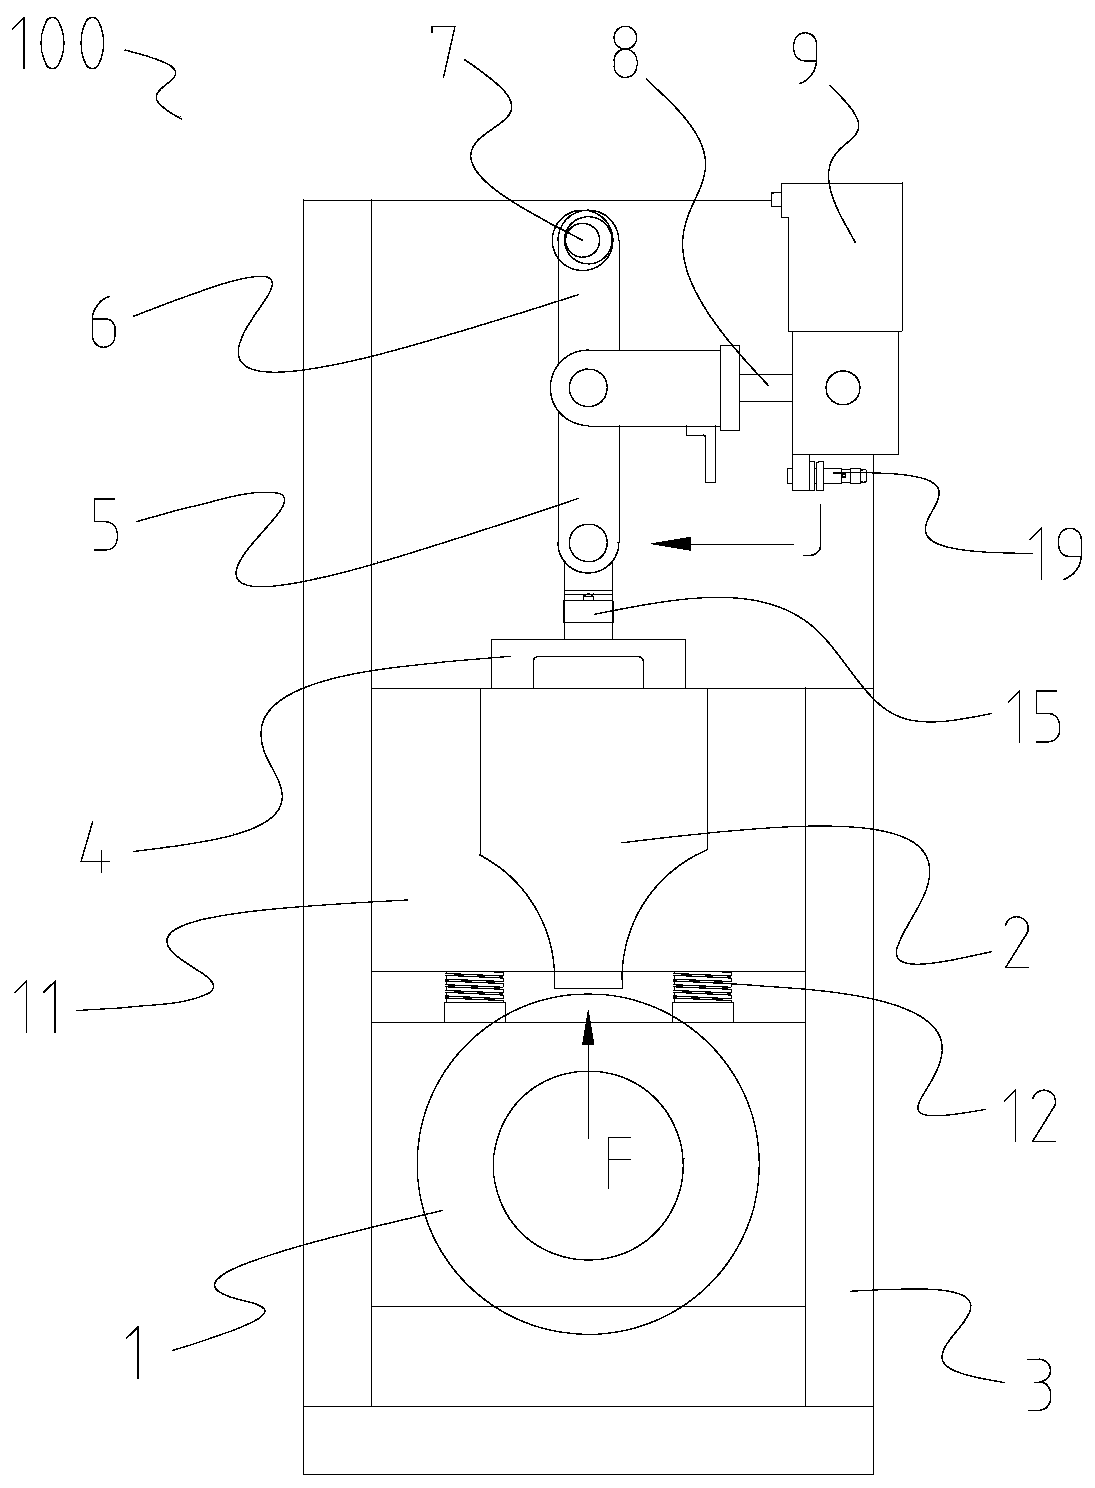 Sheet-shaped object welding device